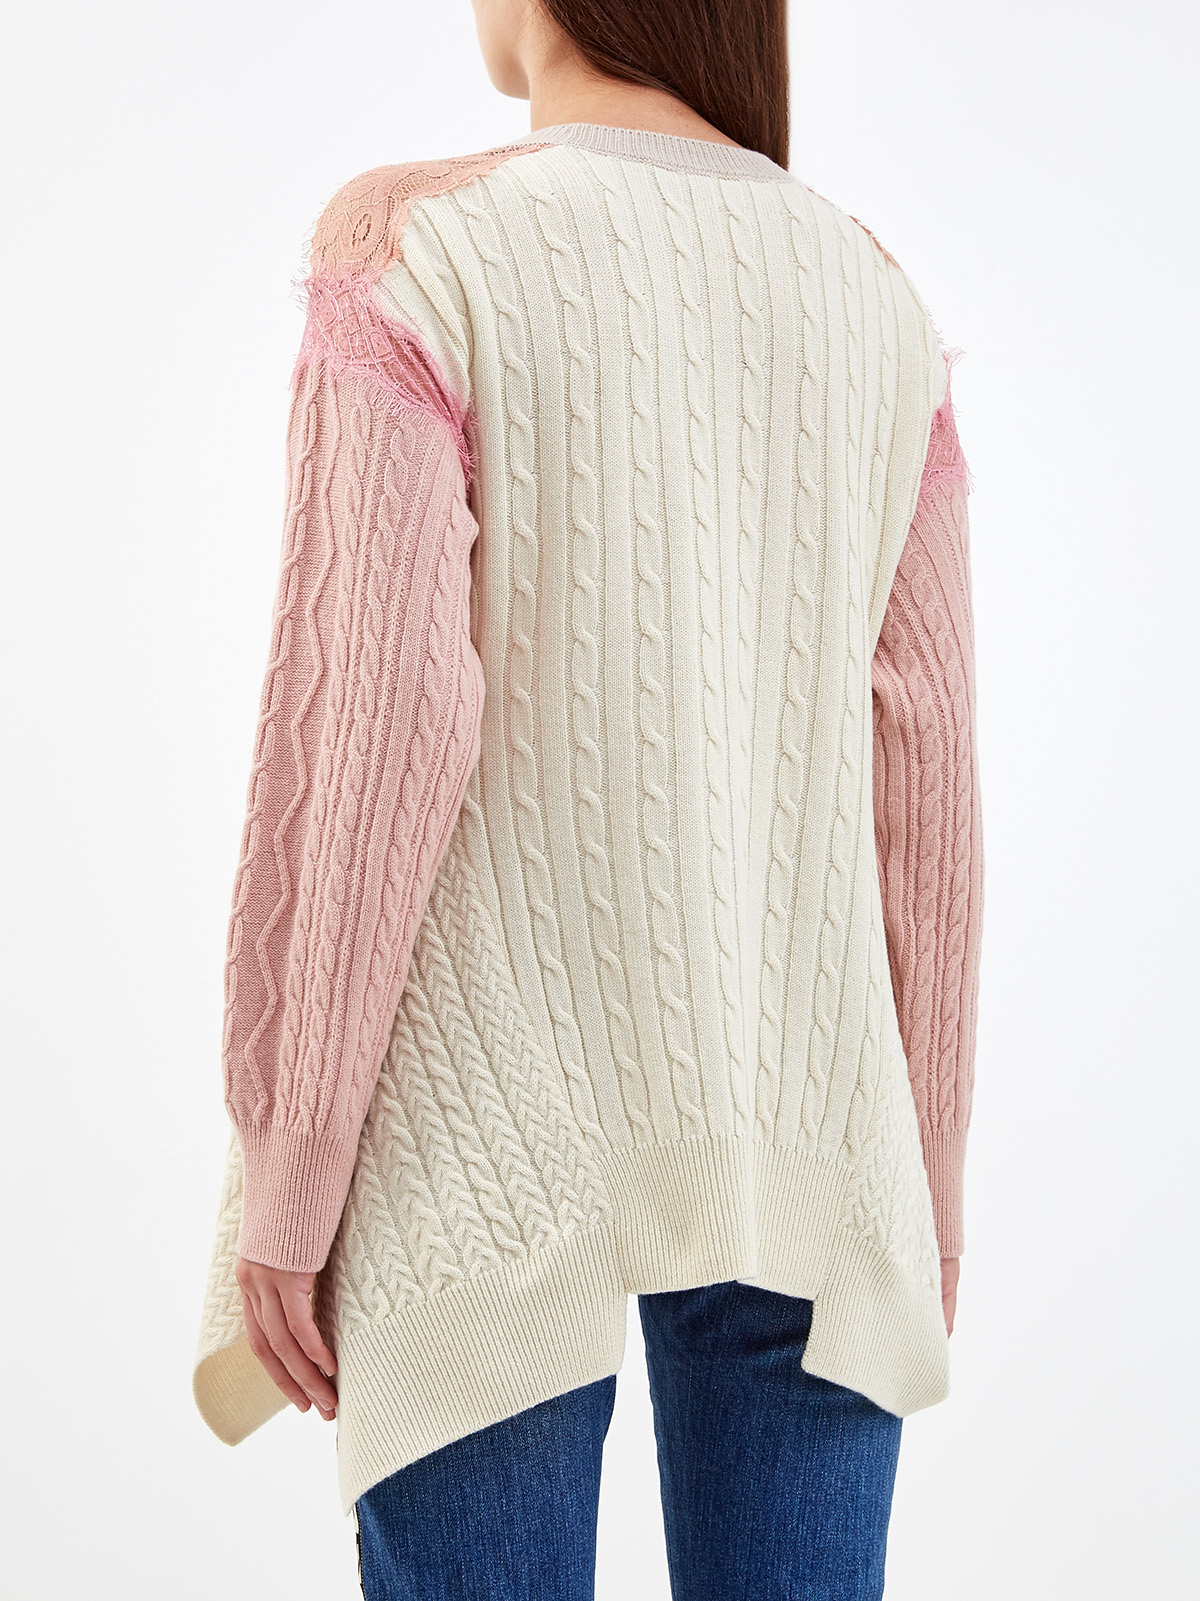 Шерстяной пуловер с объемным принтом и кружевом STELLA McCARTNEY, цвет розовый, размер 38;36 - фото 4